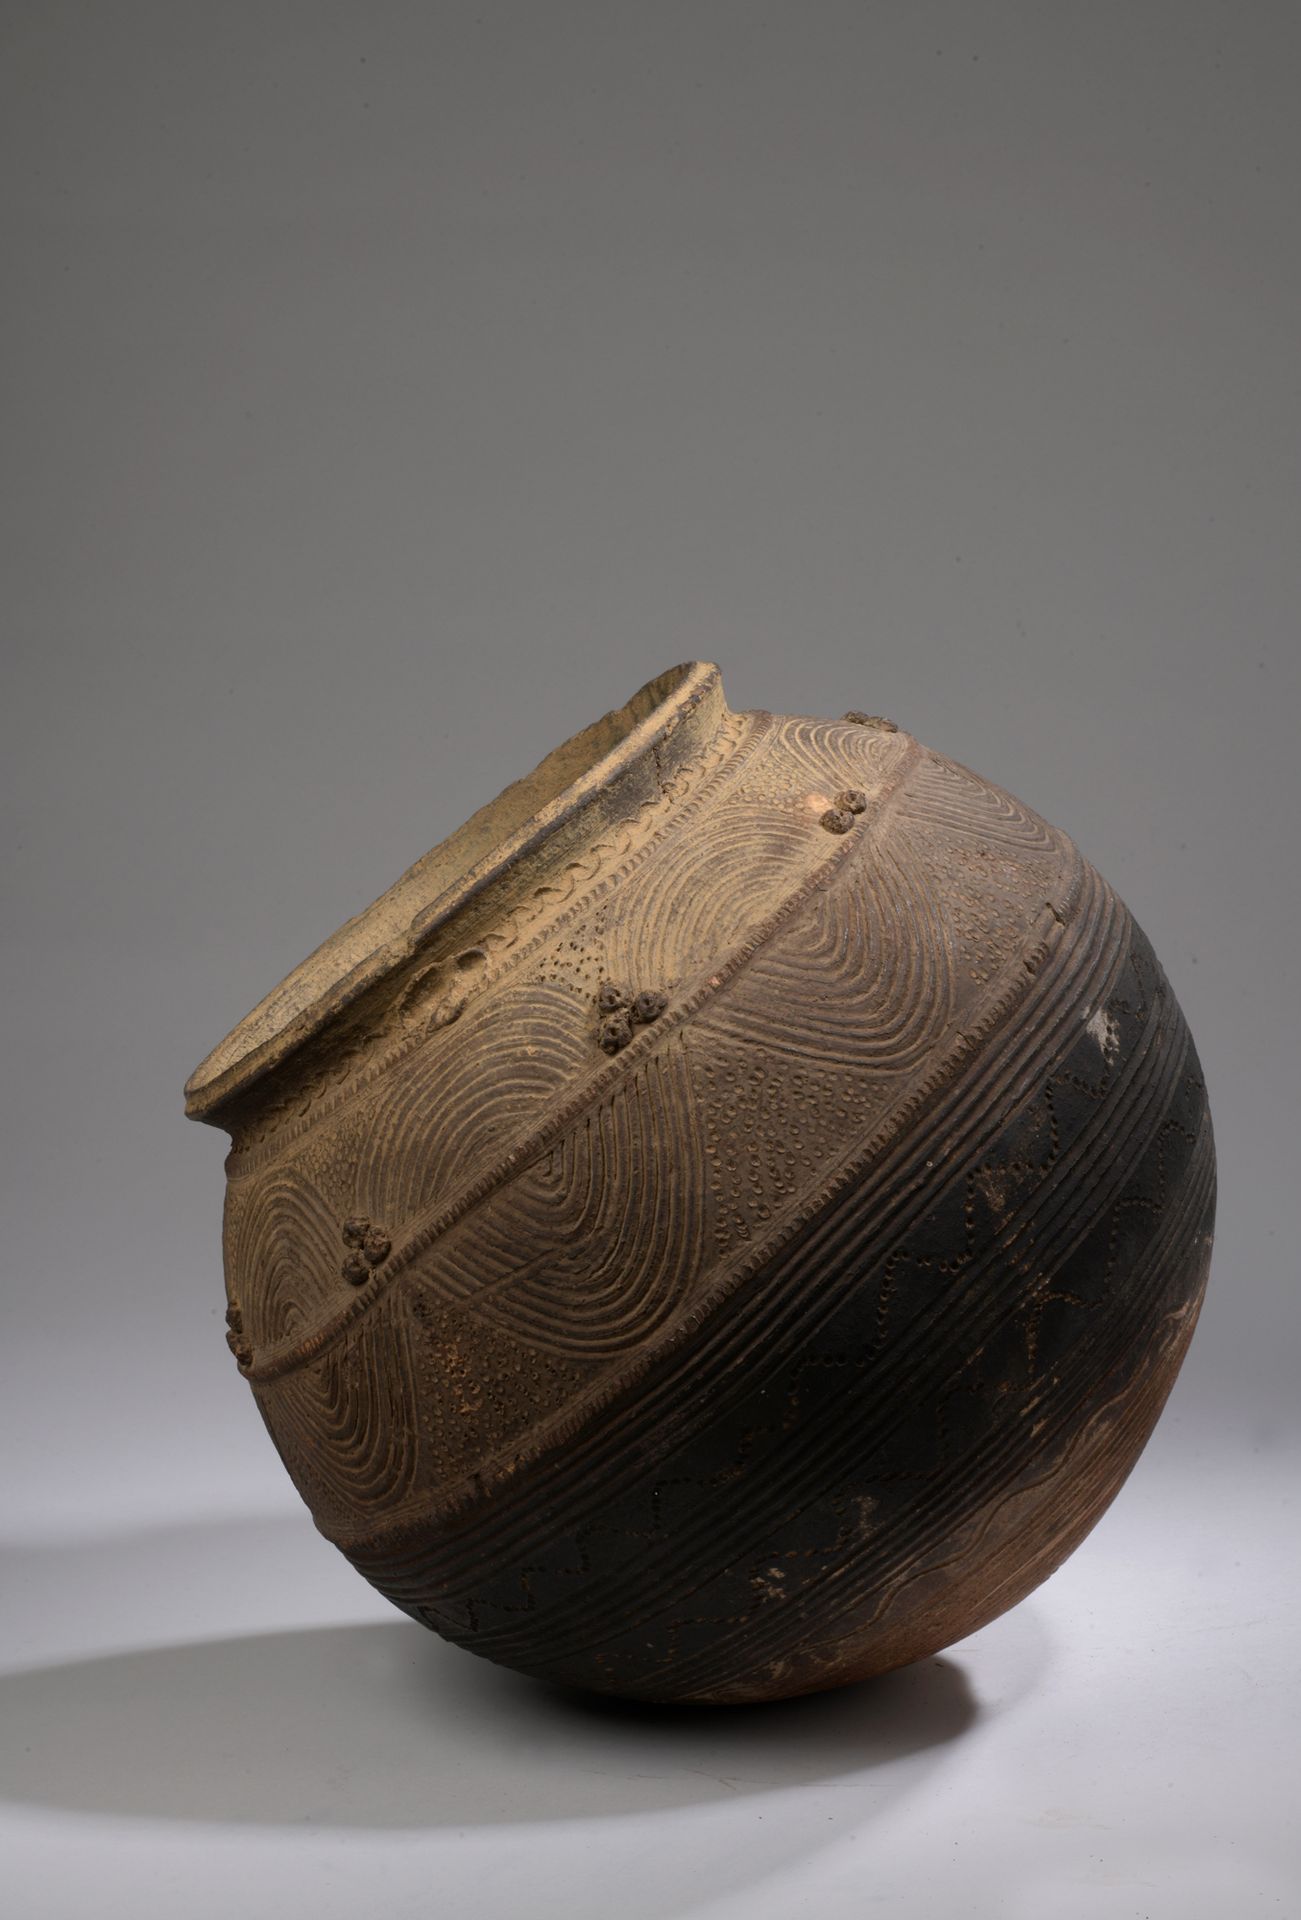 Null NUPE JARRE, Nigeria

Terracota con engobe marrón.

H. 34 D. 32 cm

El cuerp&hellip;